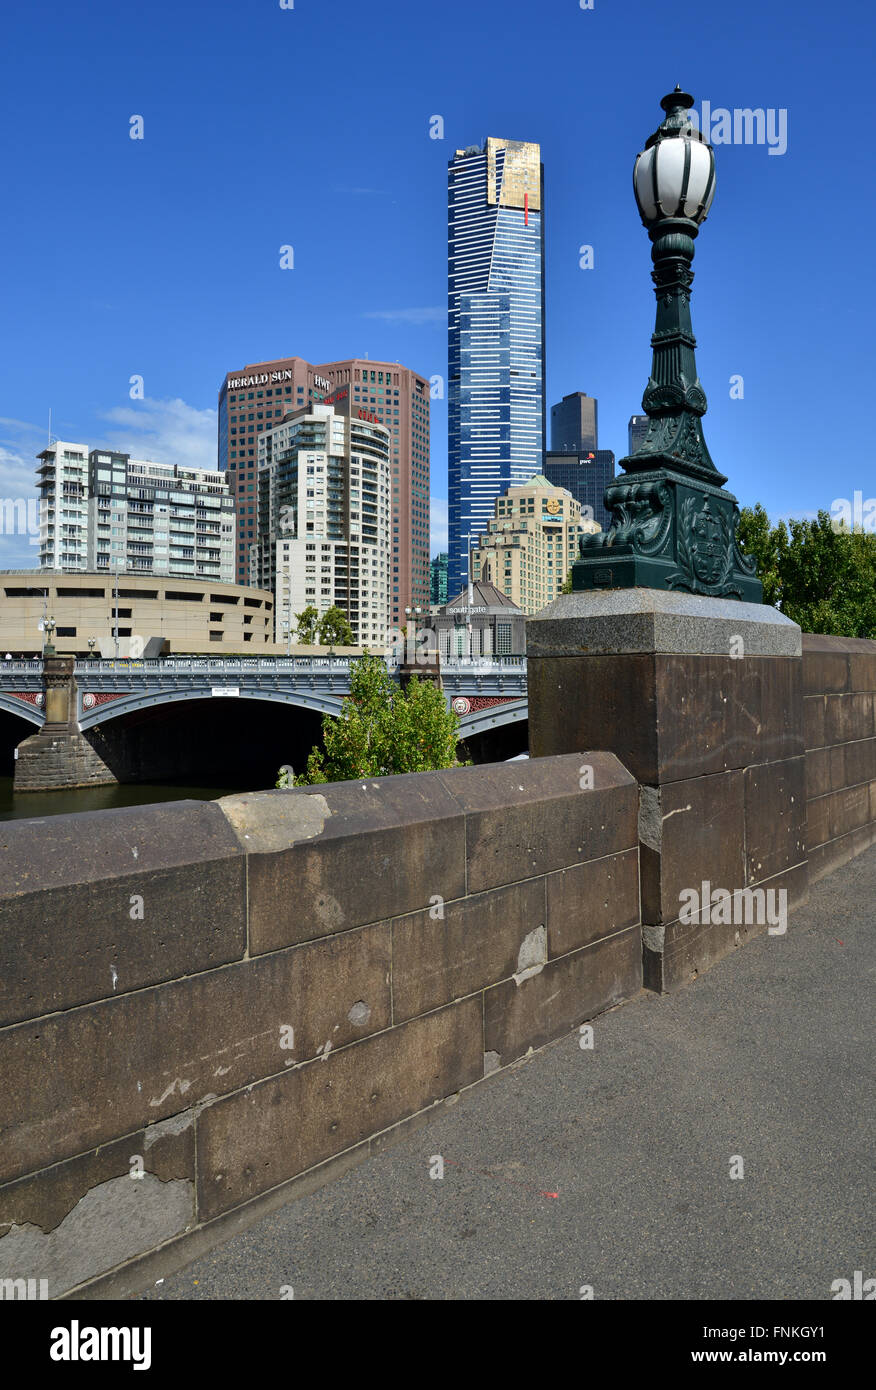 Australia, Victoria, Melbourne, Queen's Bridge and Southgate Stock Photo